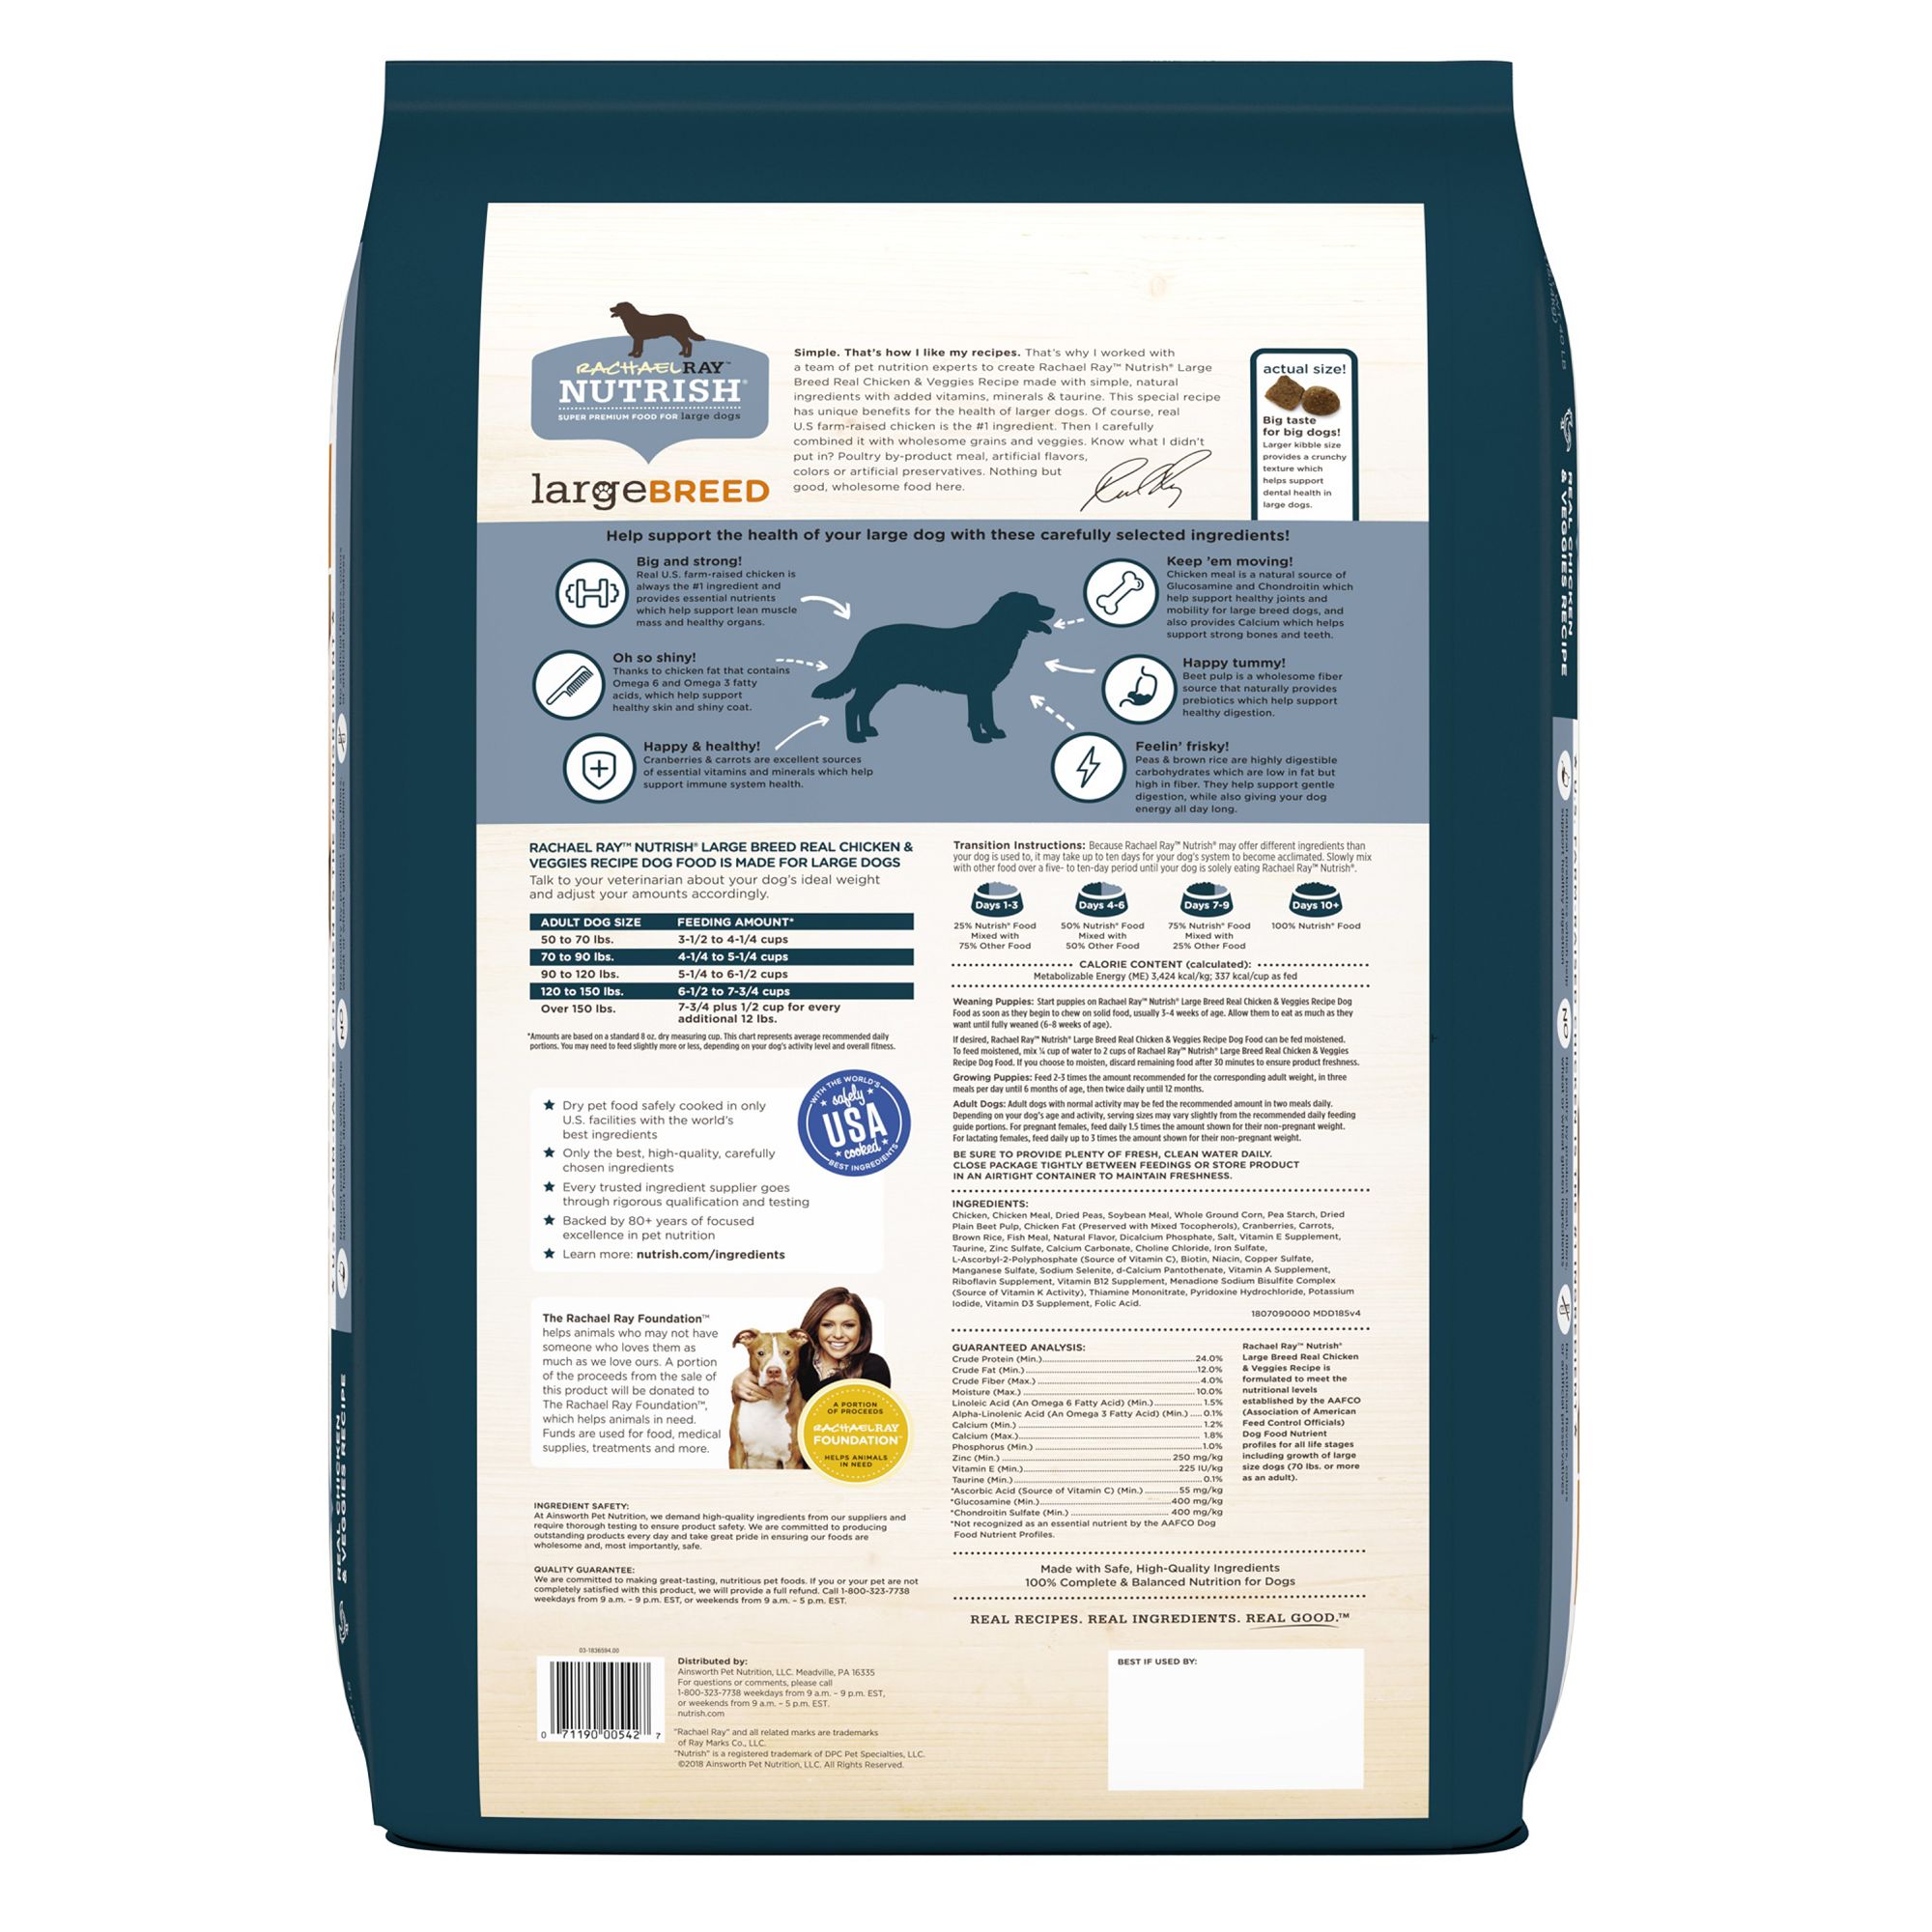 rachel ray dog food petsmart